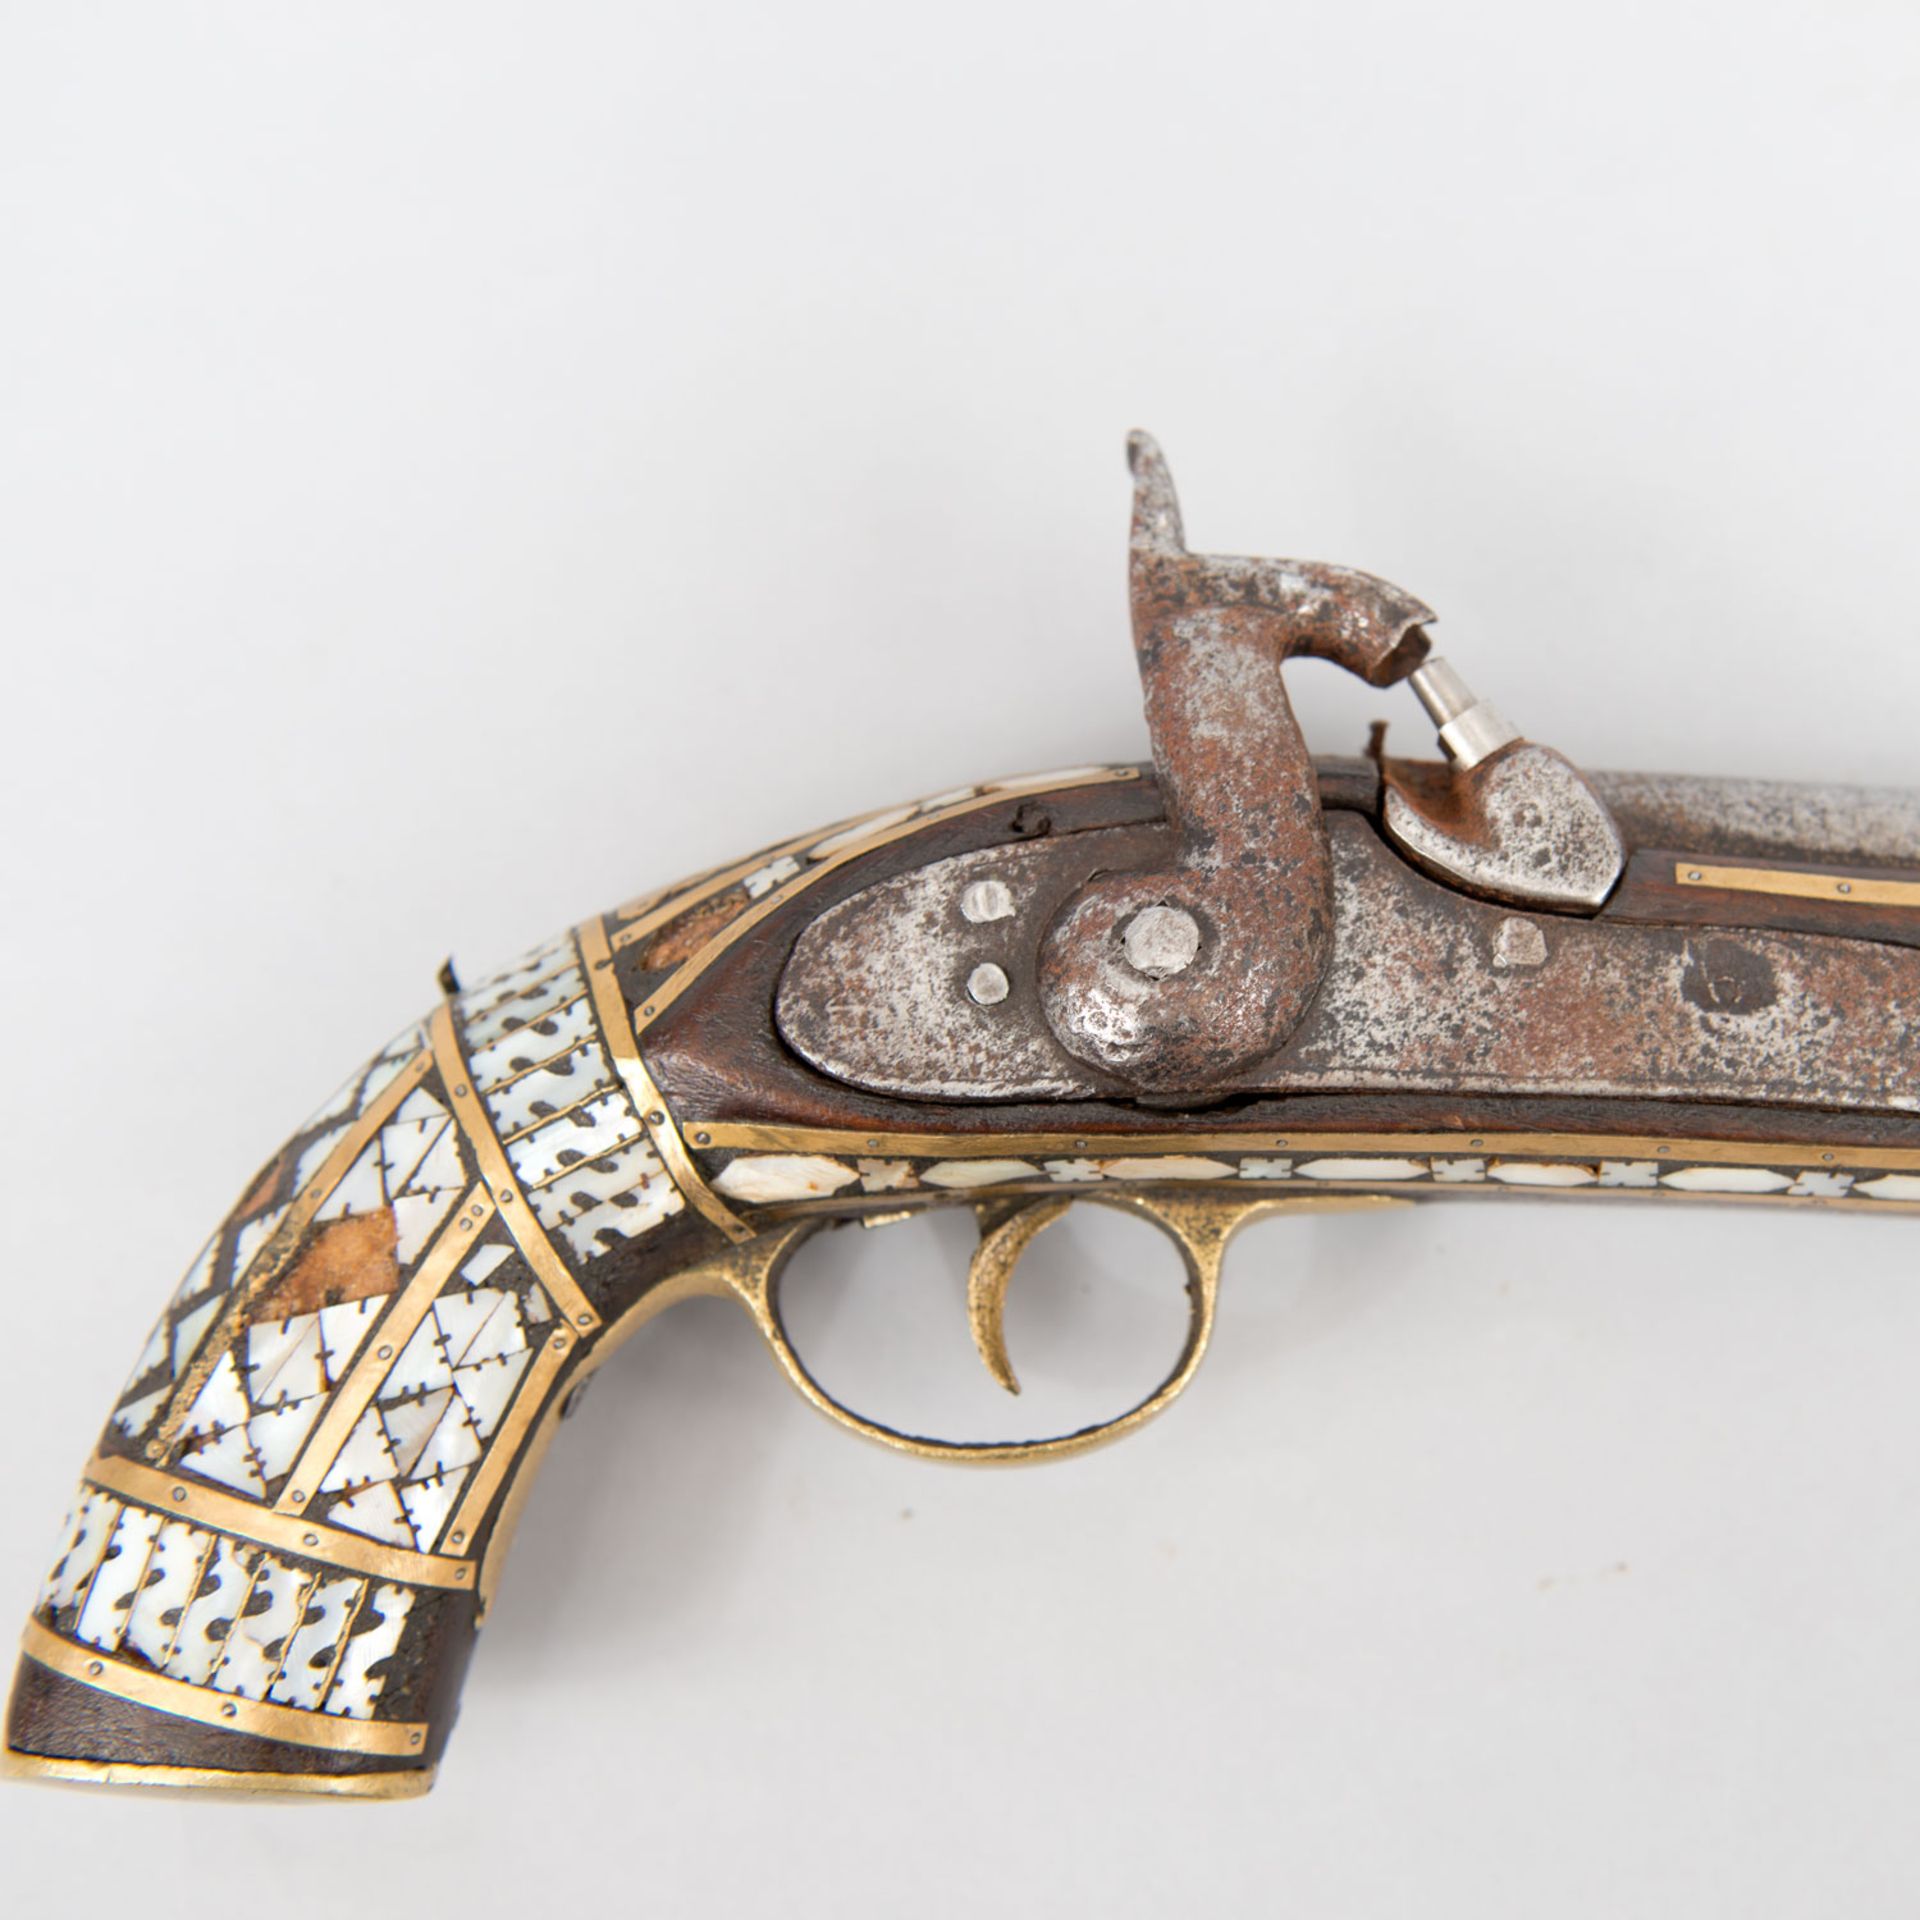 Ottoman Pistol - Image 3 of 3